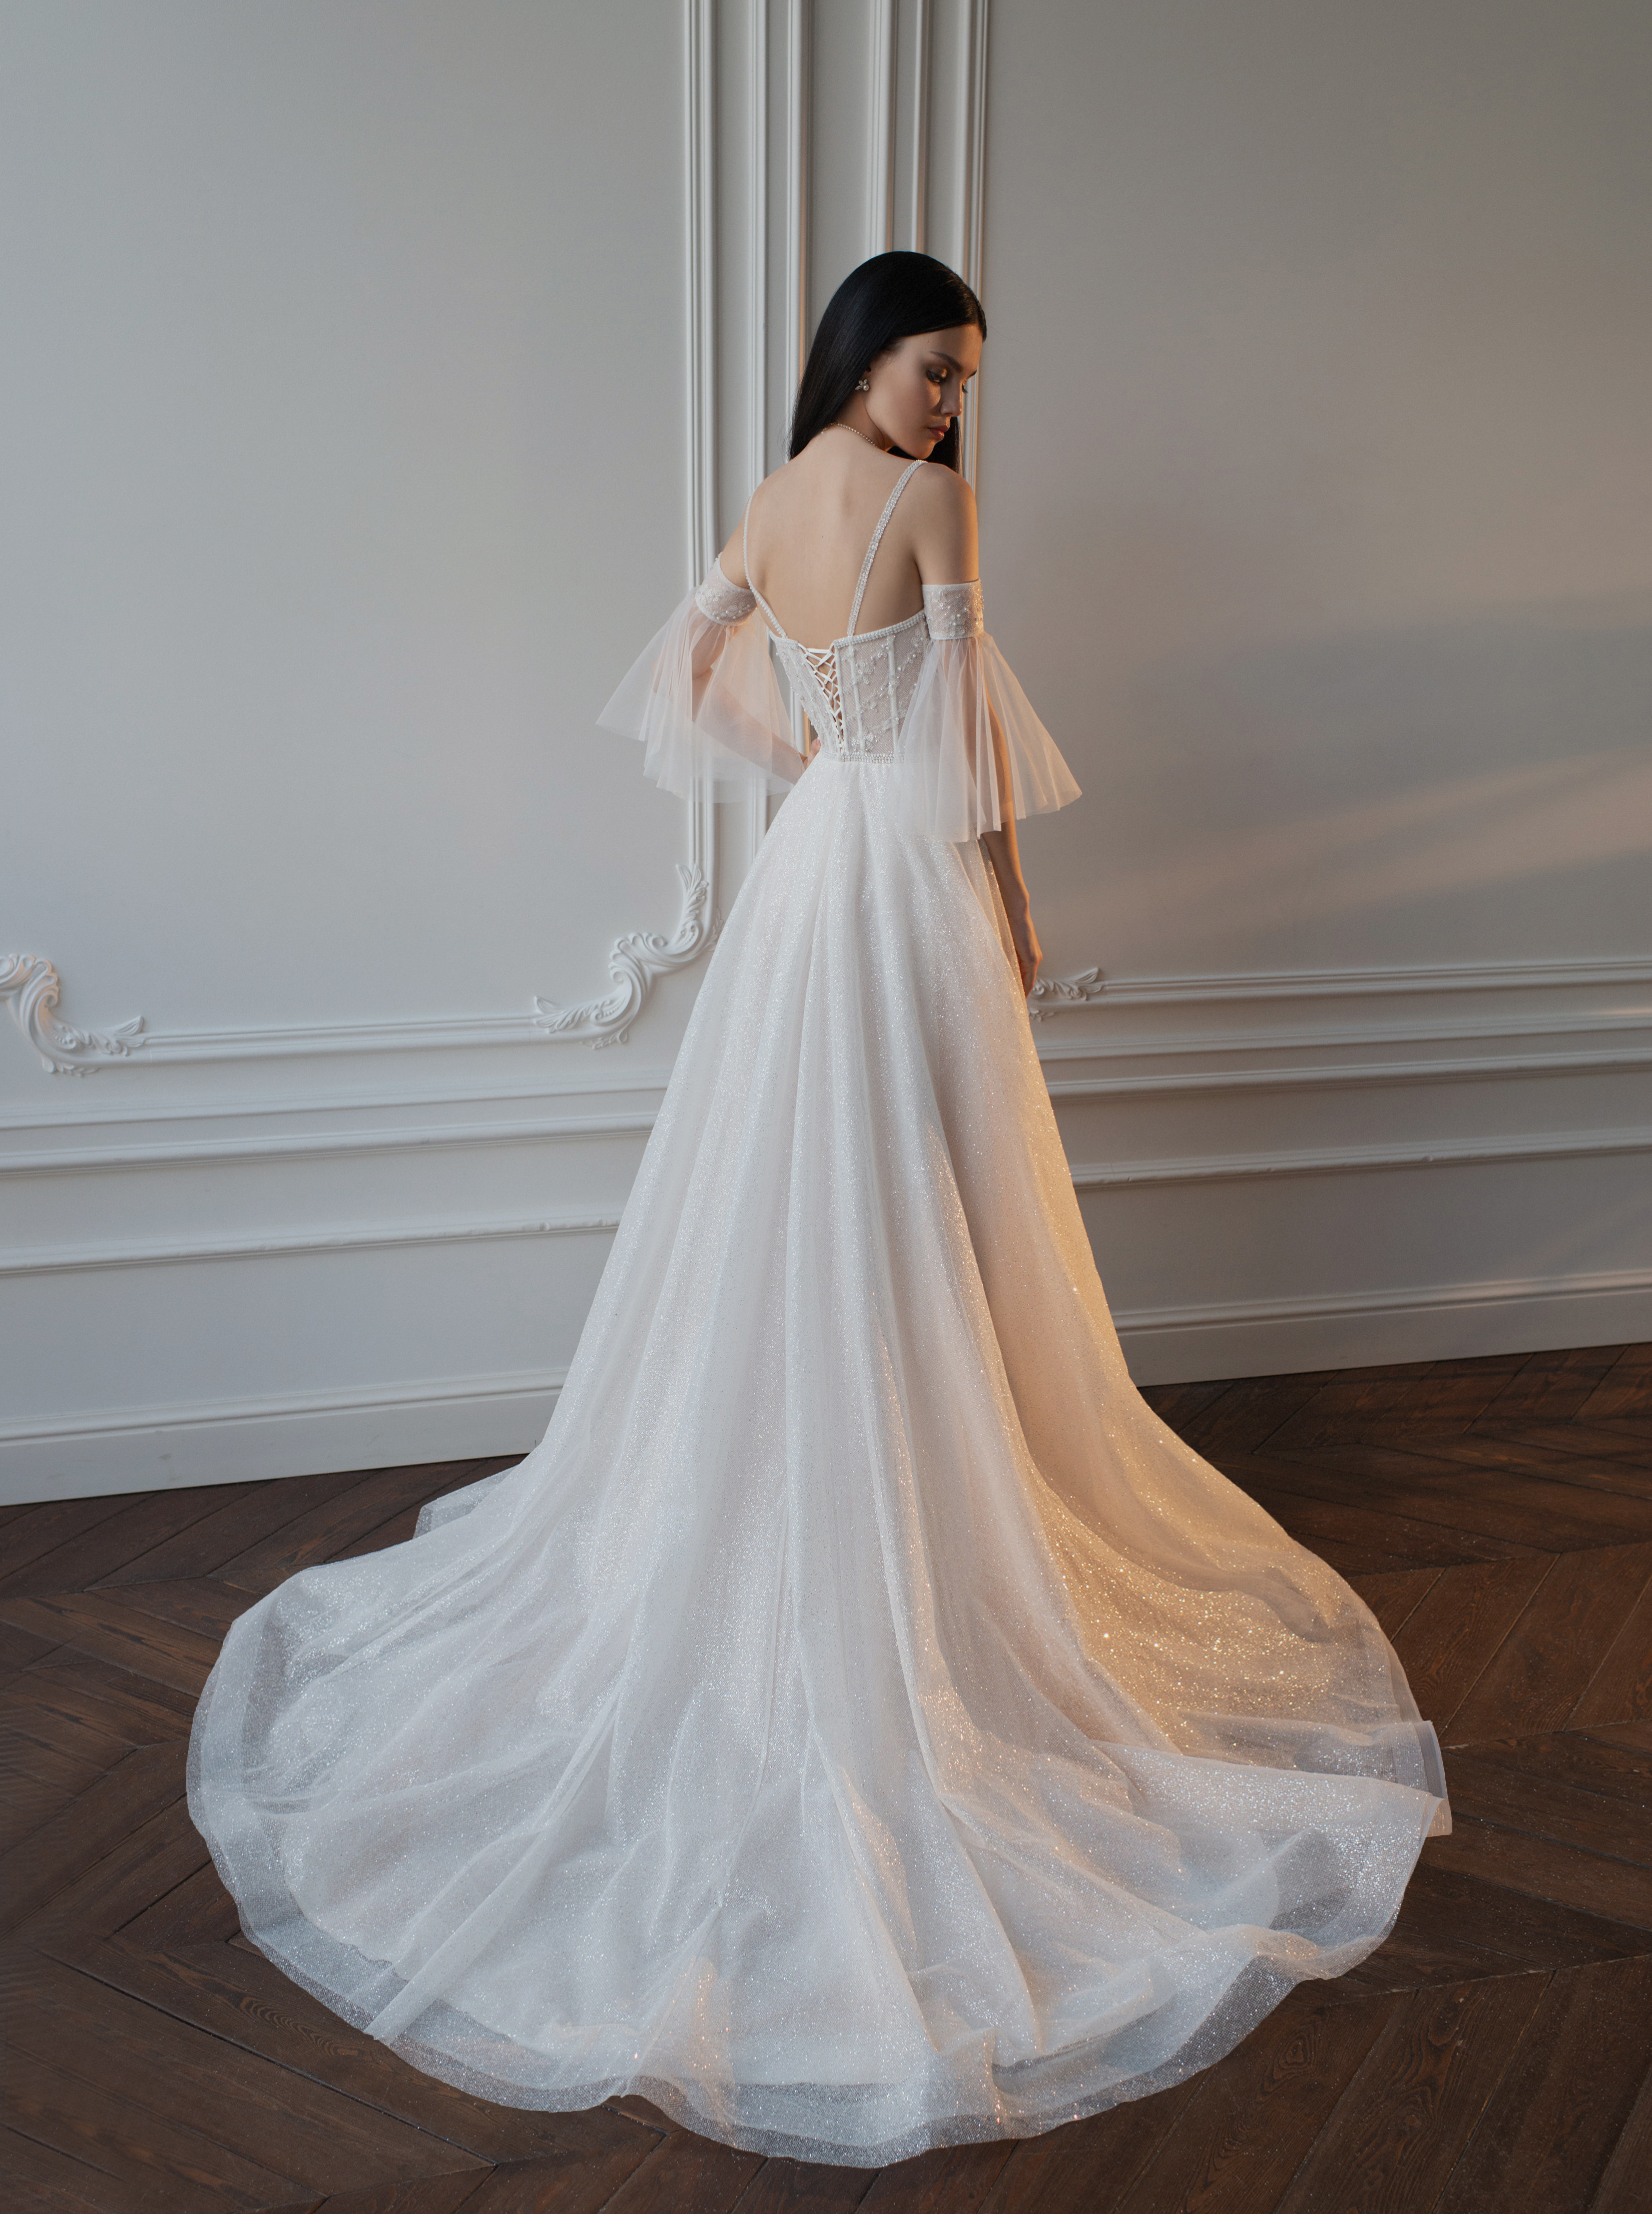 Купить свадебное платье «Пруданс» Татьяна Каплун из коллекции 2022 года в салоне «Мэри Трюфель»